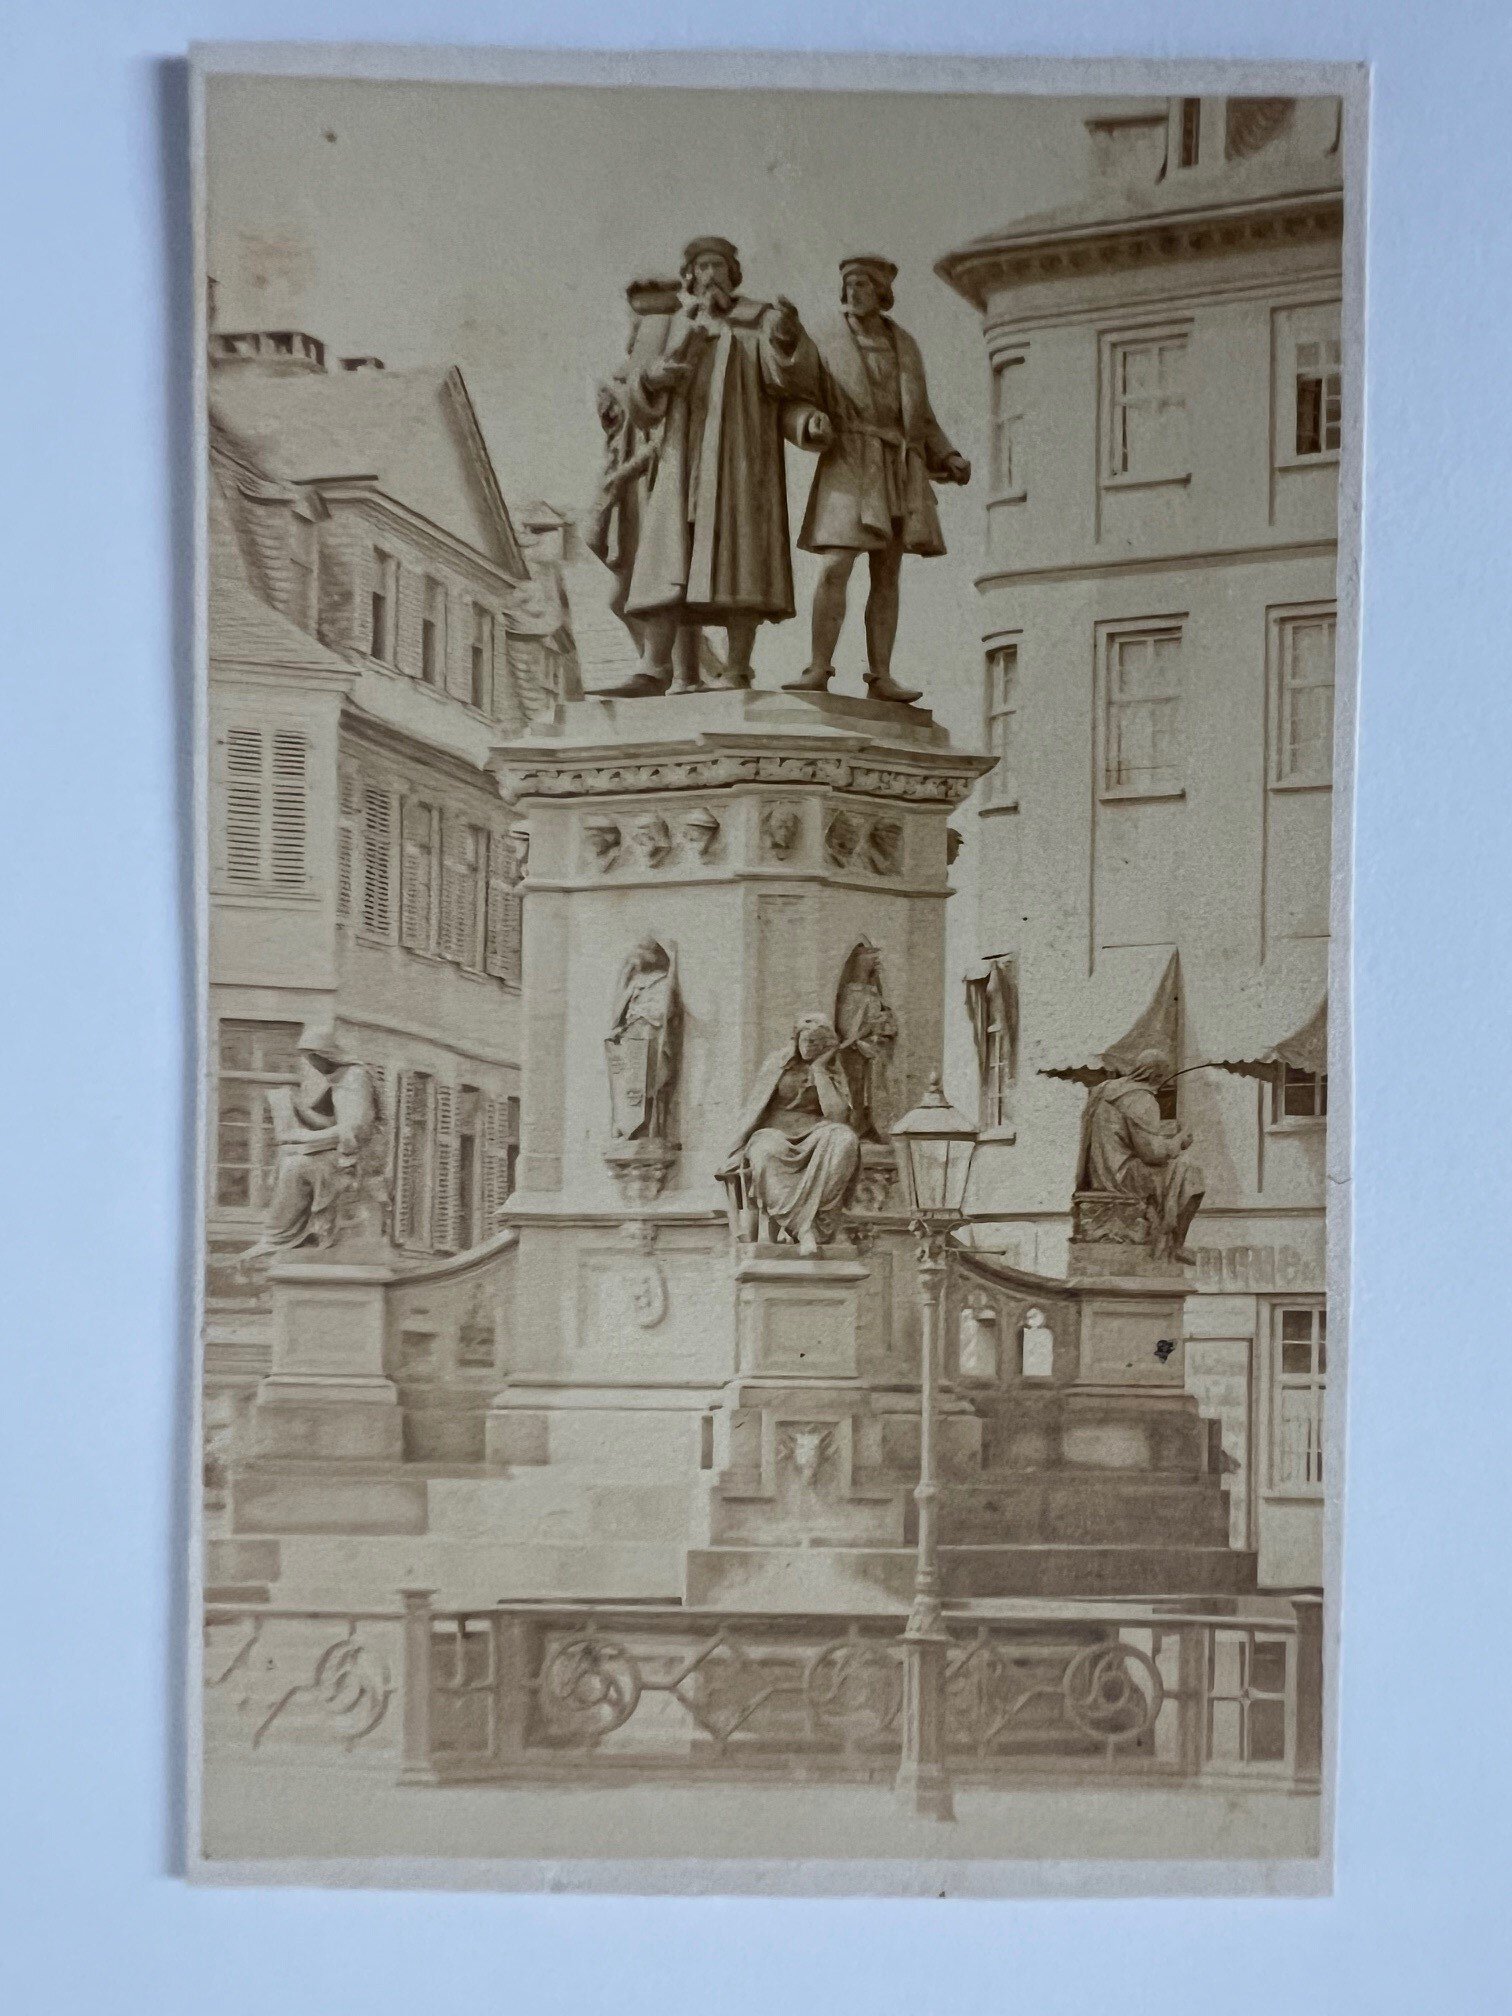 CdV, Friedrich Wilhelm Maas, Frankfurt, Das Guttenberg-Denkmal, ca. 1865. (Taunus-Rhein-Main - Regionalgeschichtliche Sammlung Dr. Stefan Naas CC BY-NC-SA)